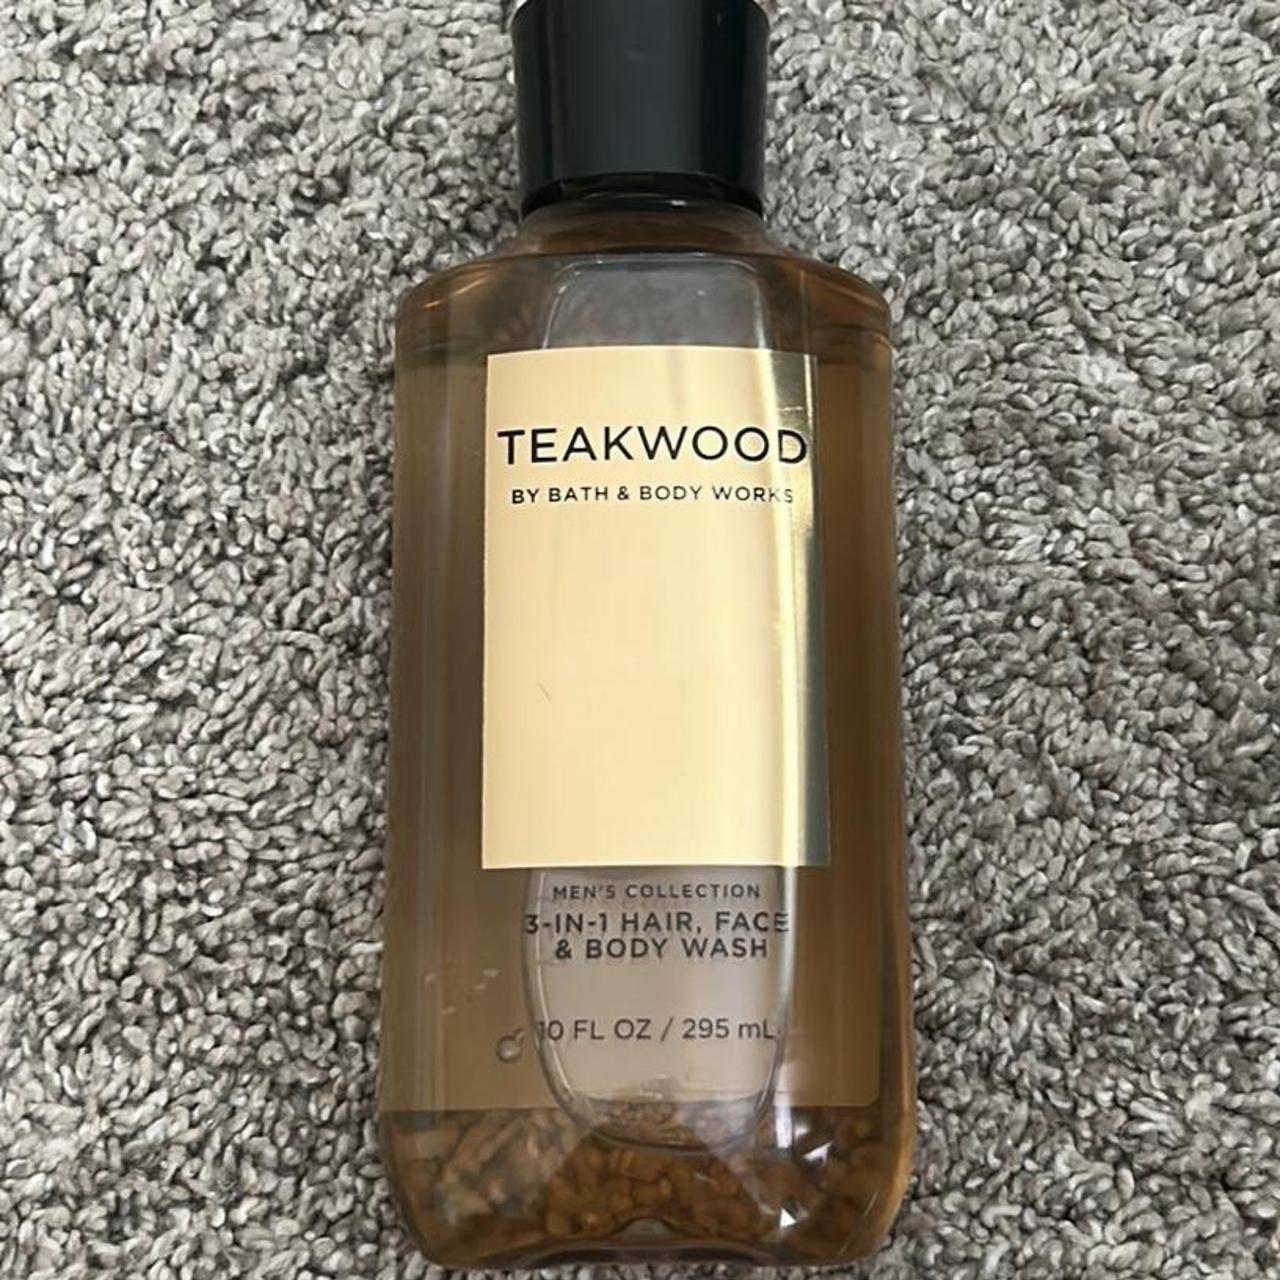 Bath & Body Works Mahogany Teakwood 3-in-1 Hair, Face & Body Wash